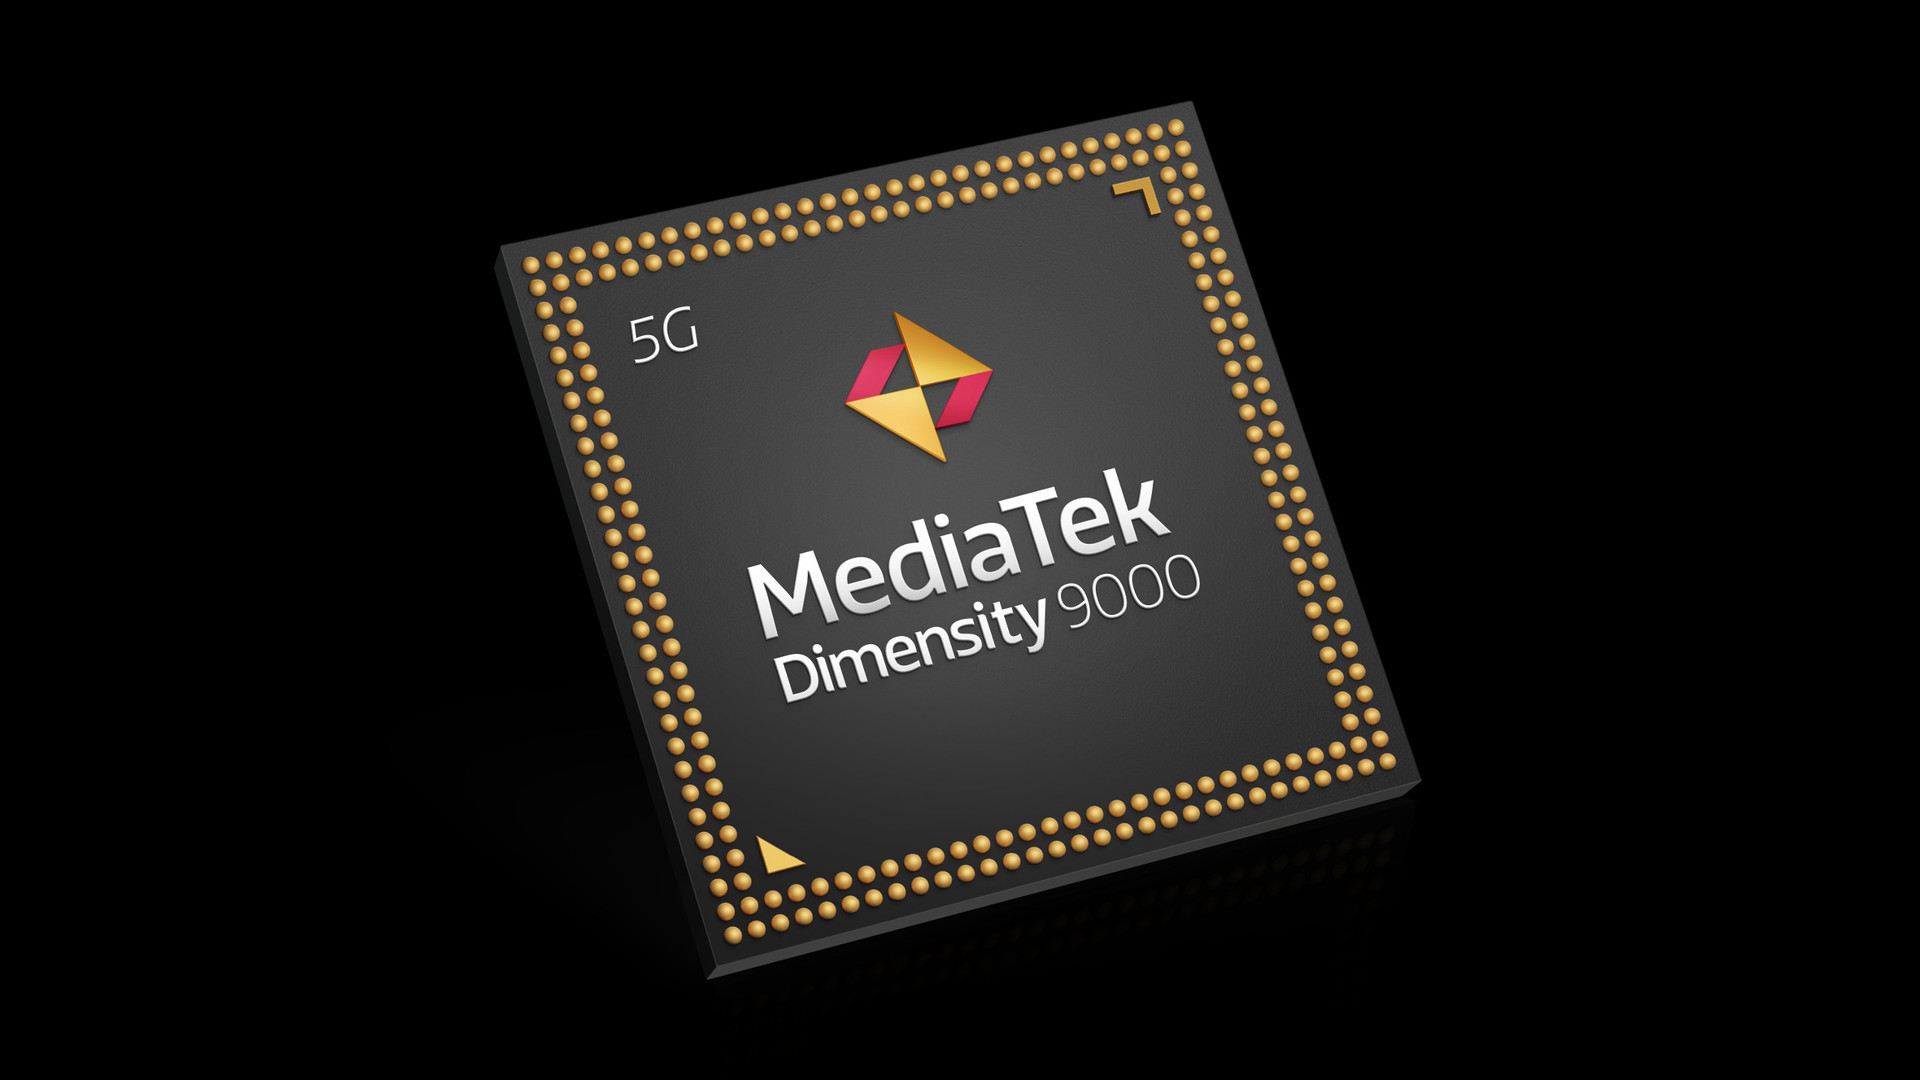 9000-densitet avslöjad: Mediatek riktar sig till Snapdragon 800-serien